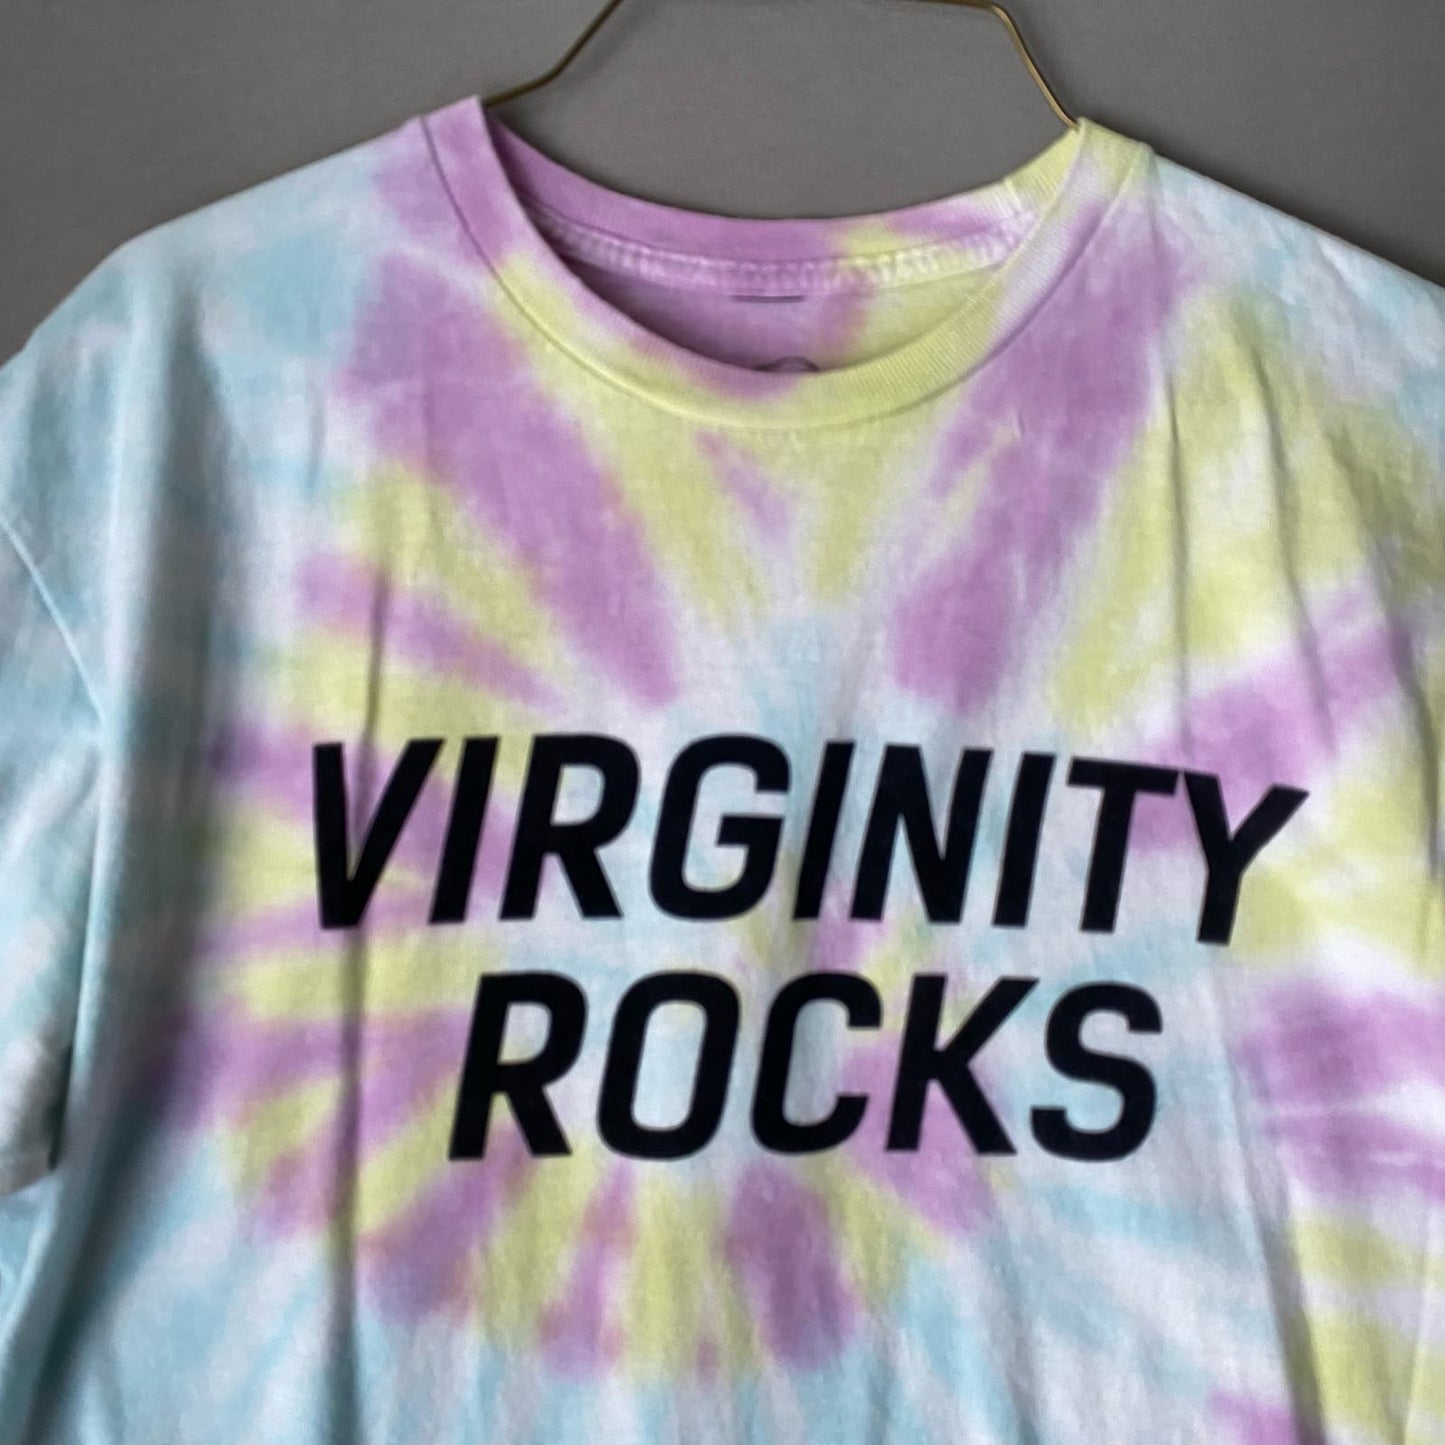 Virginity Rocks Danny Duncan sz M tie die short sleeve shirt